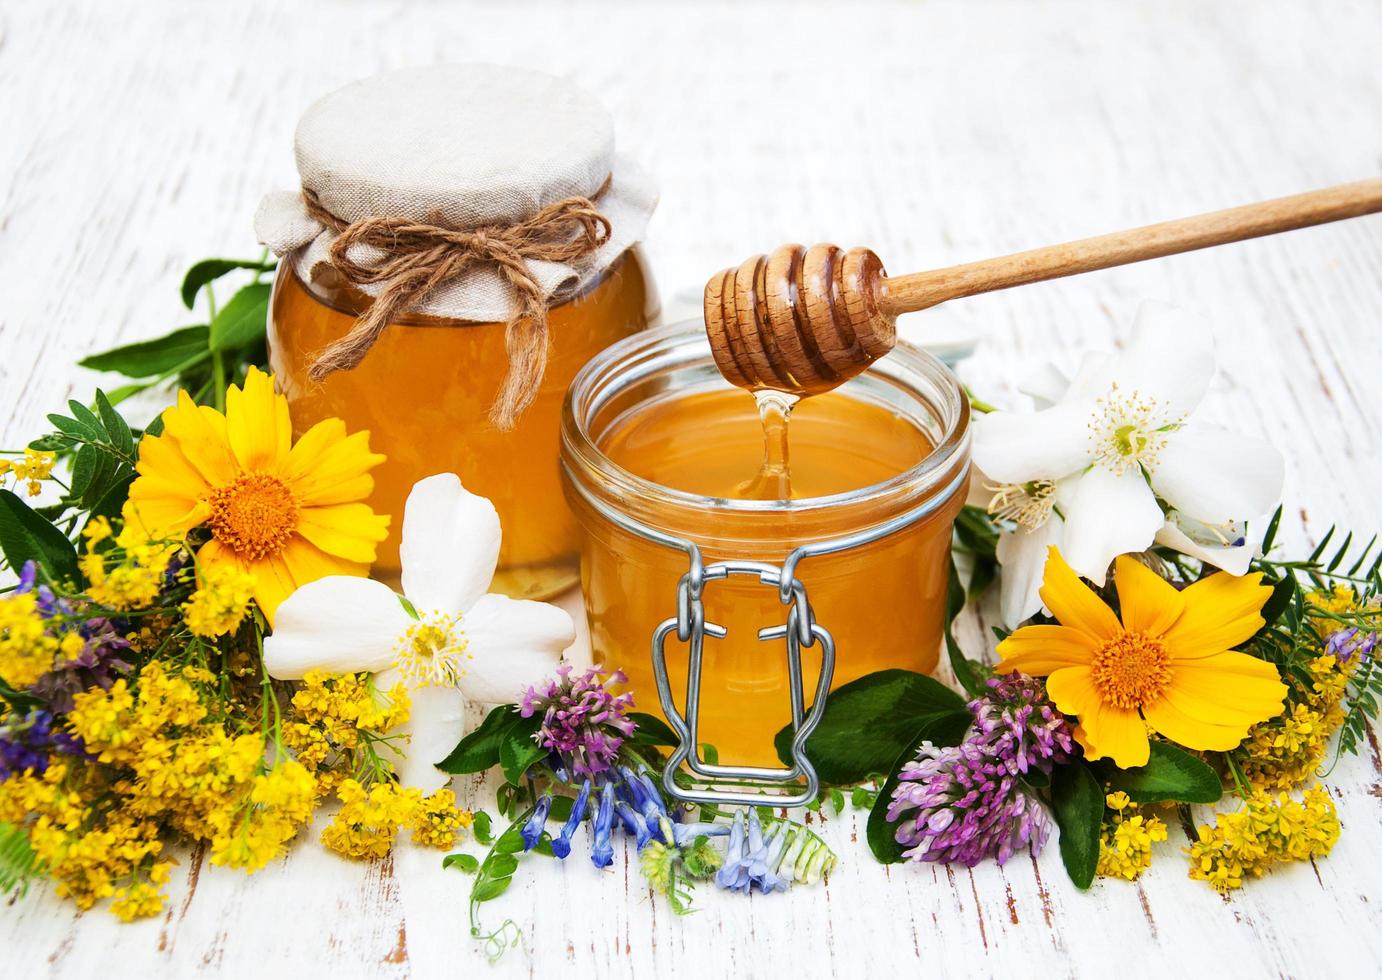 Honig und wilde Blumen auf einem hölzernen Hintergrund foto